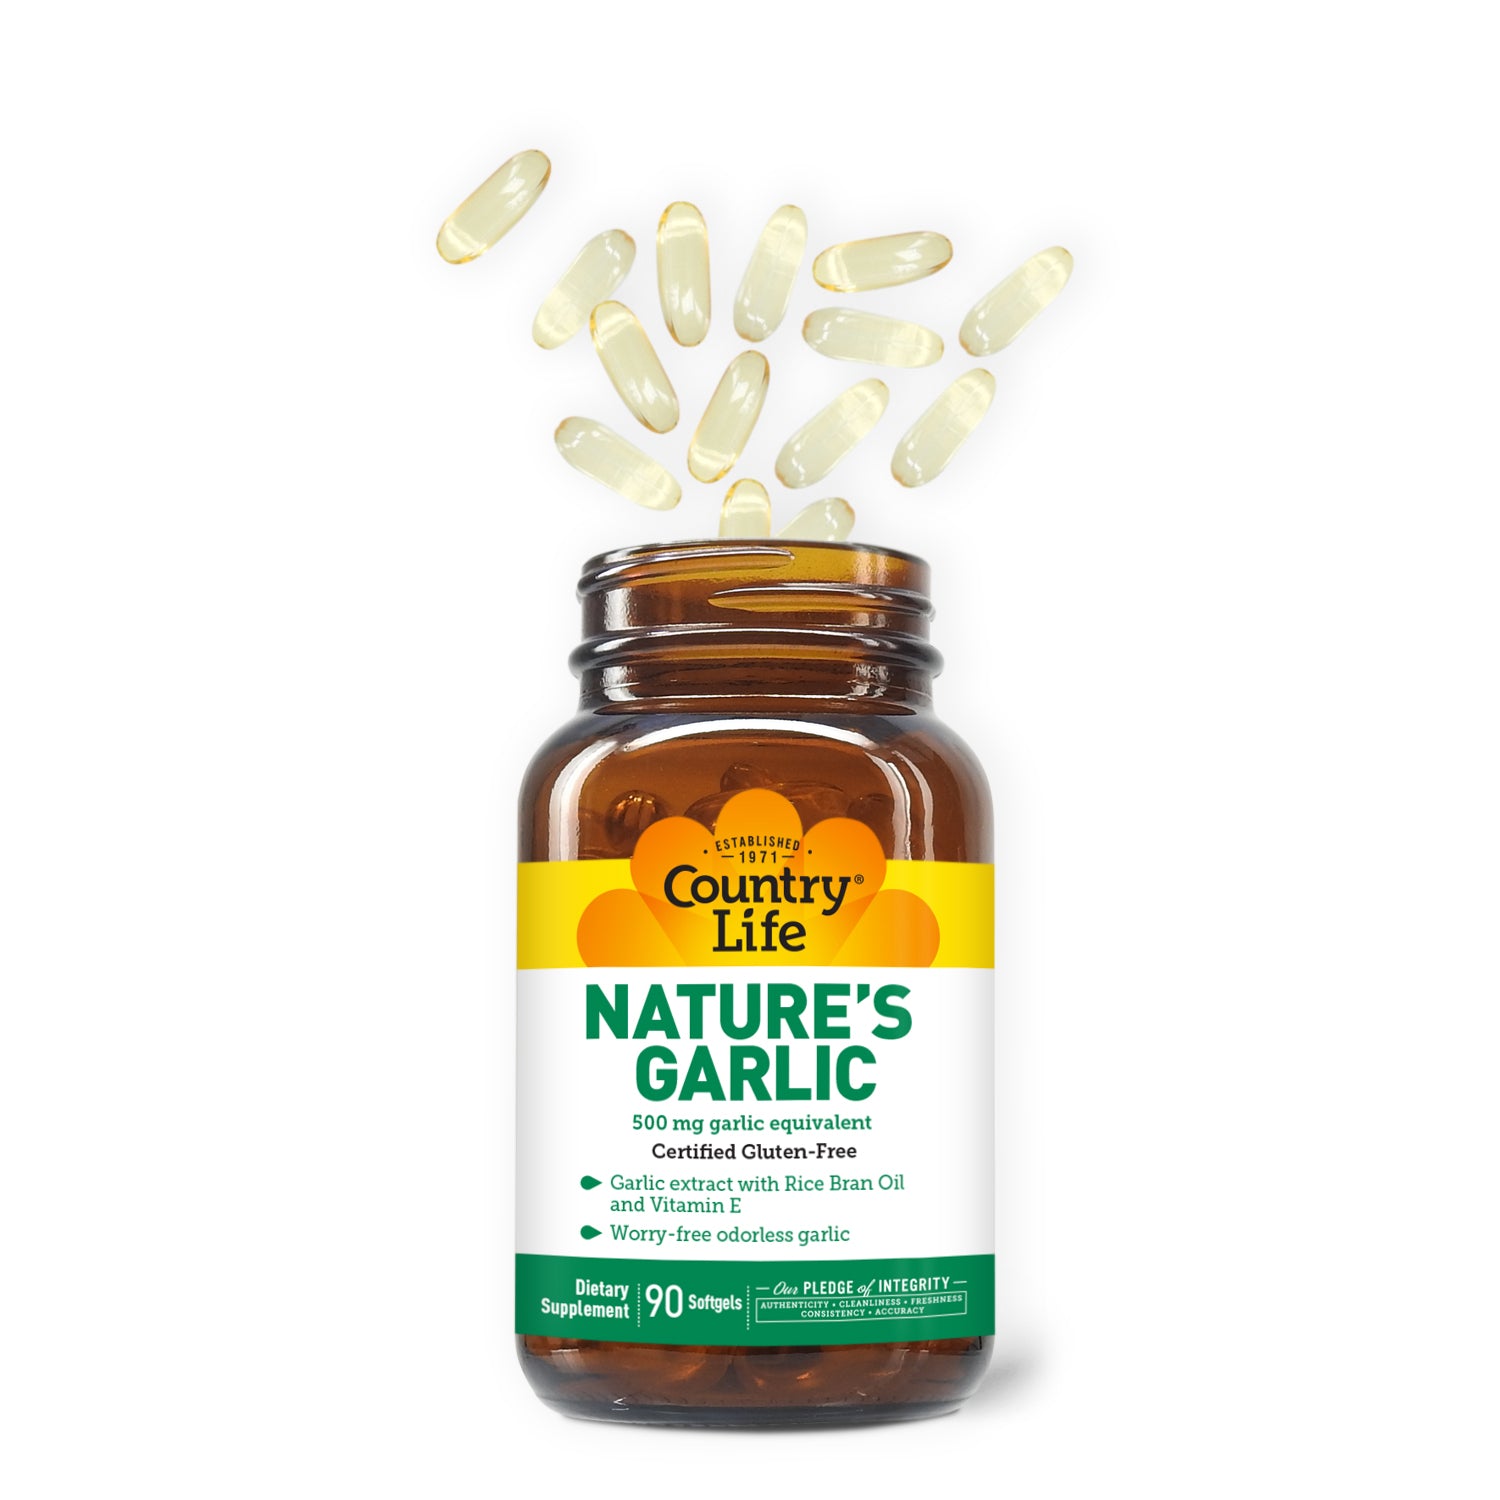 Nature's Garlic